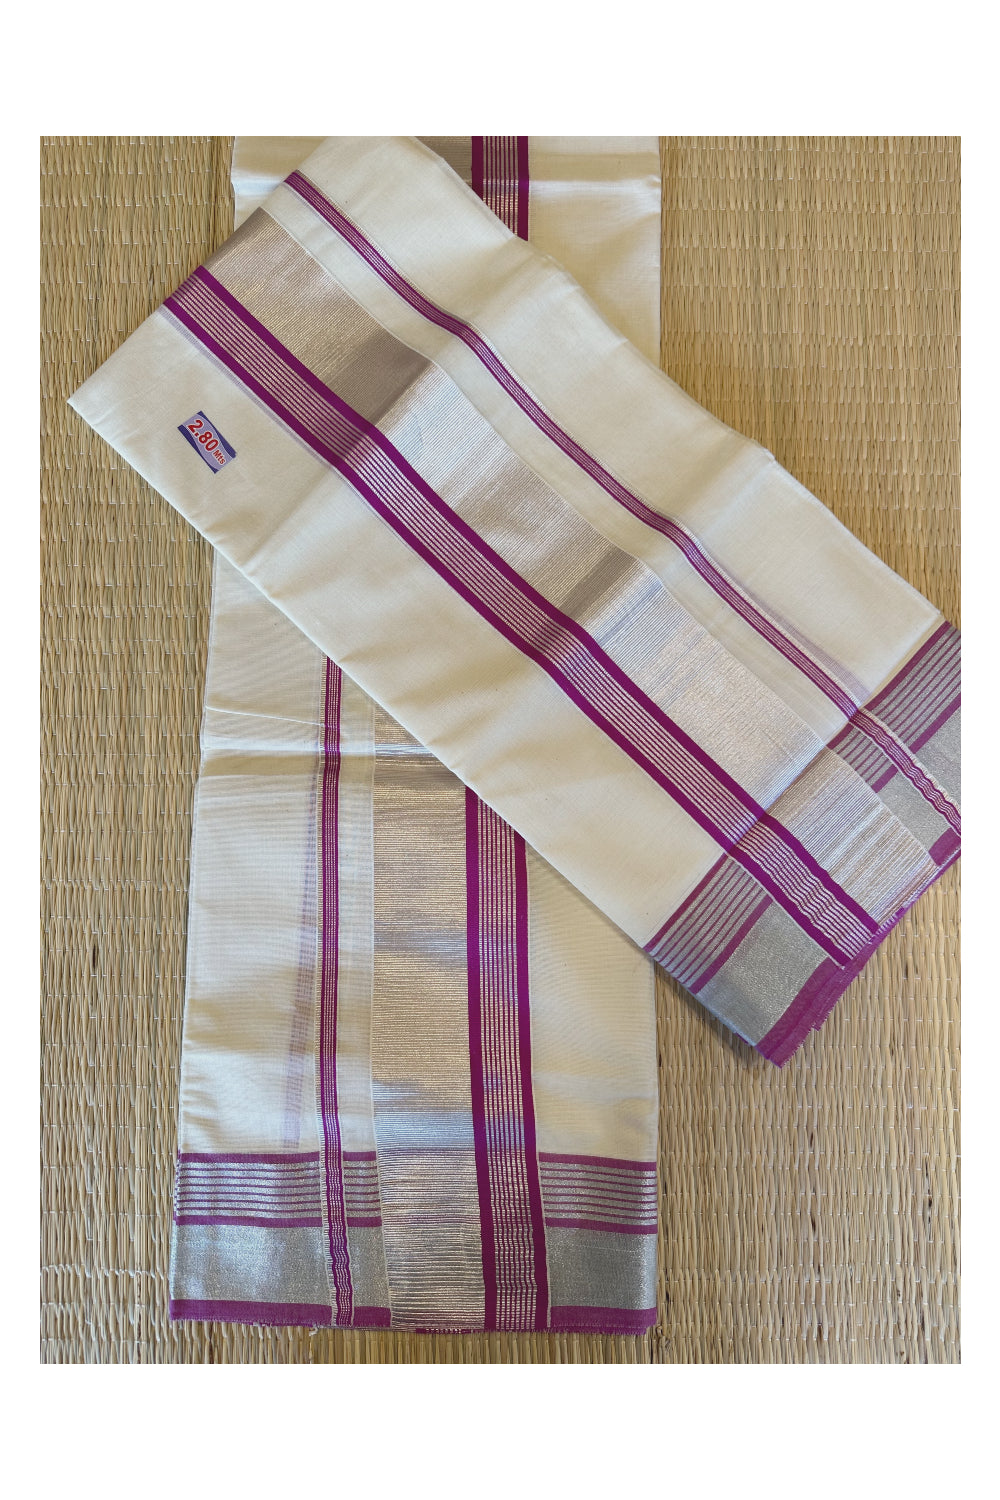 Kerala Cotton Mundum Neriyathum Single (Set Mundu) with Magenta And Silver Kasavu Border 2.80 Mtrs